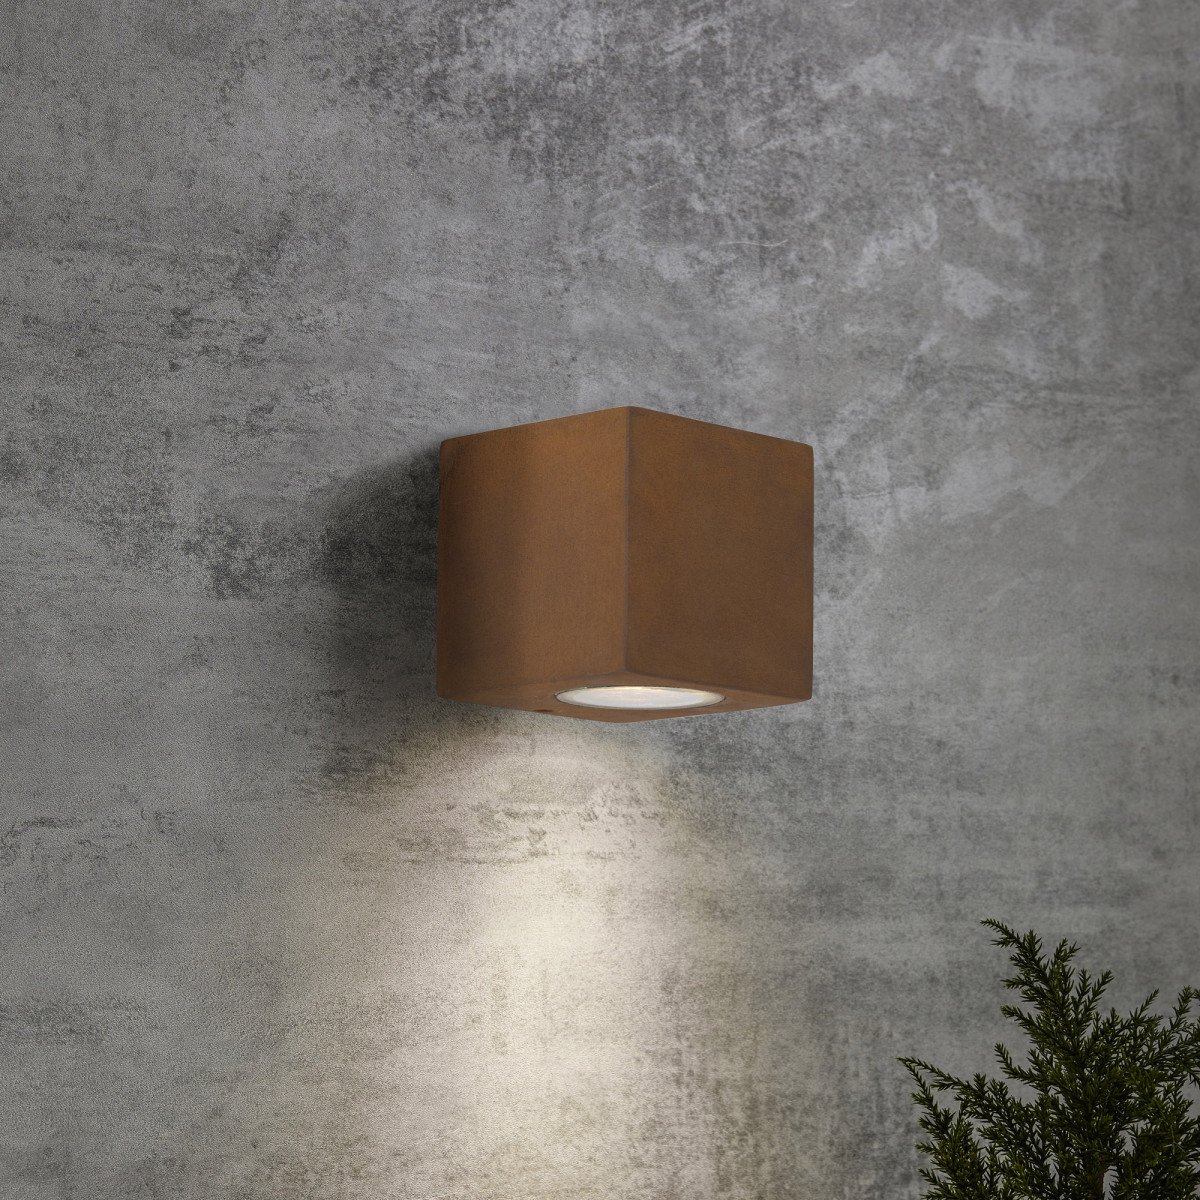 Buitenlamp Levi Downlighter moderne wandlamp in roestbruine corten kleur als buitenverlichting